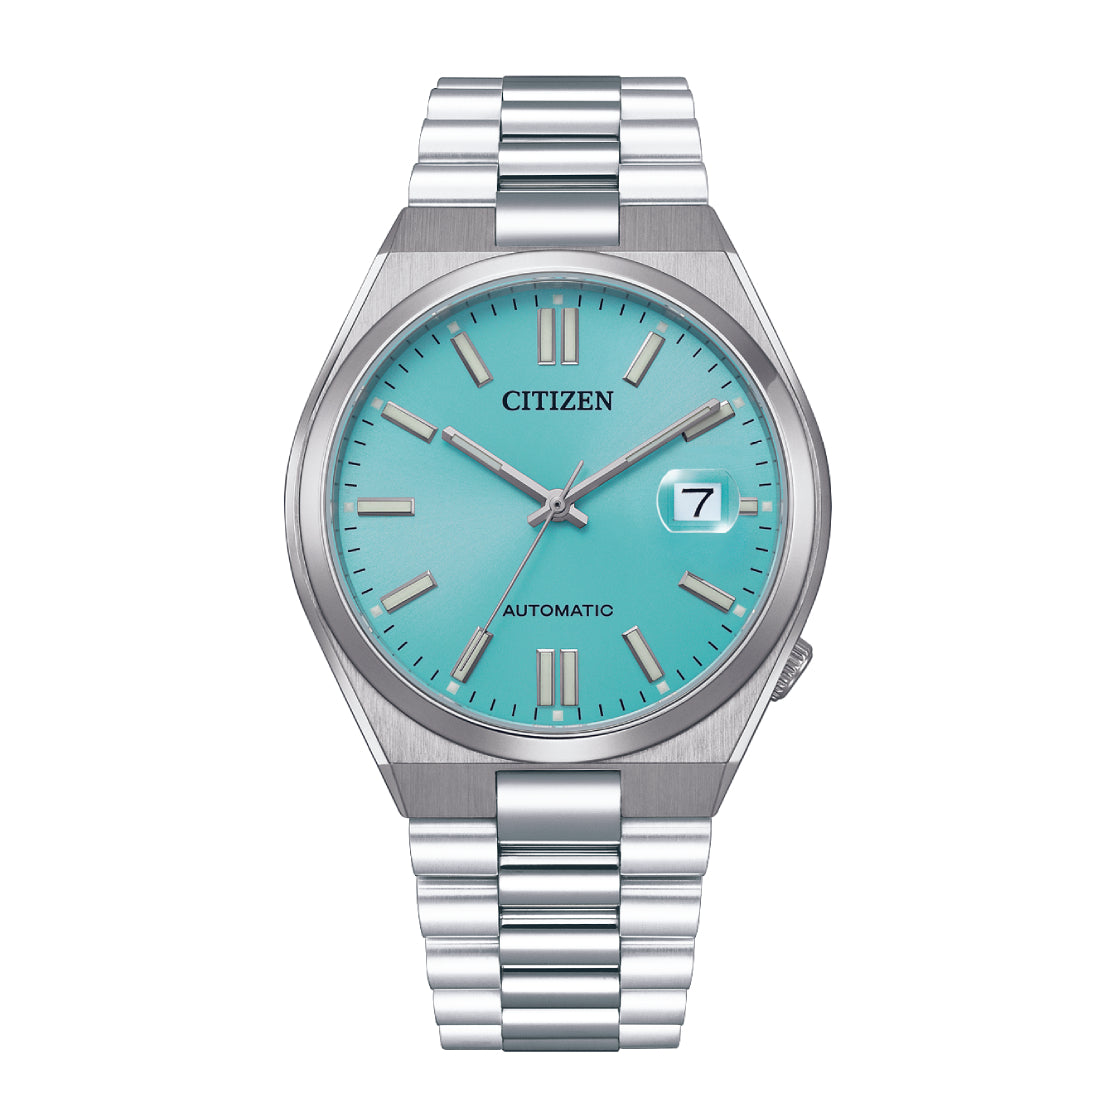 Citizen Men's Automatic Blue Dial Watch - NJ0151-88M